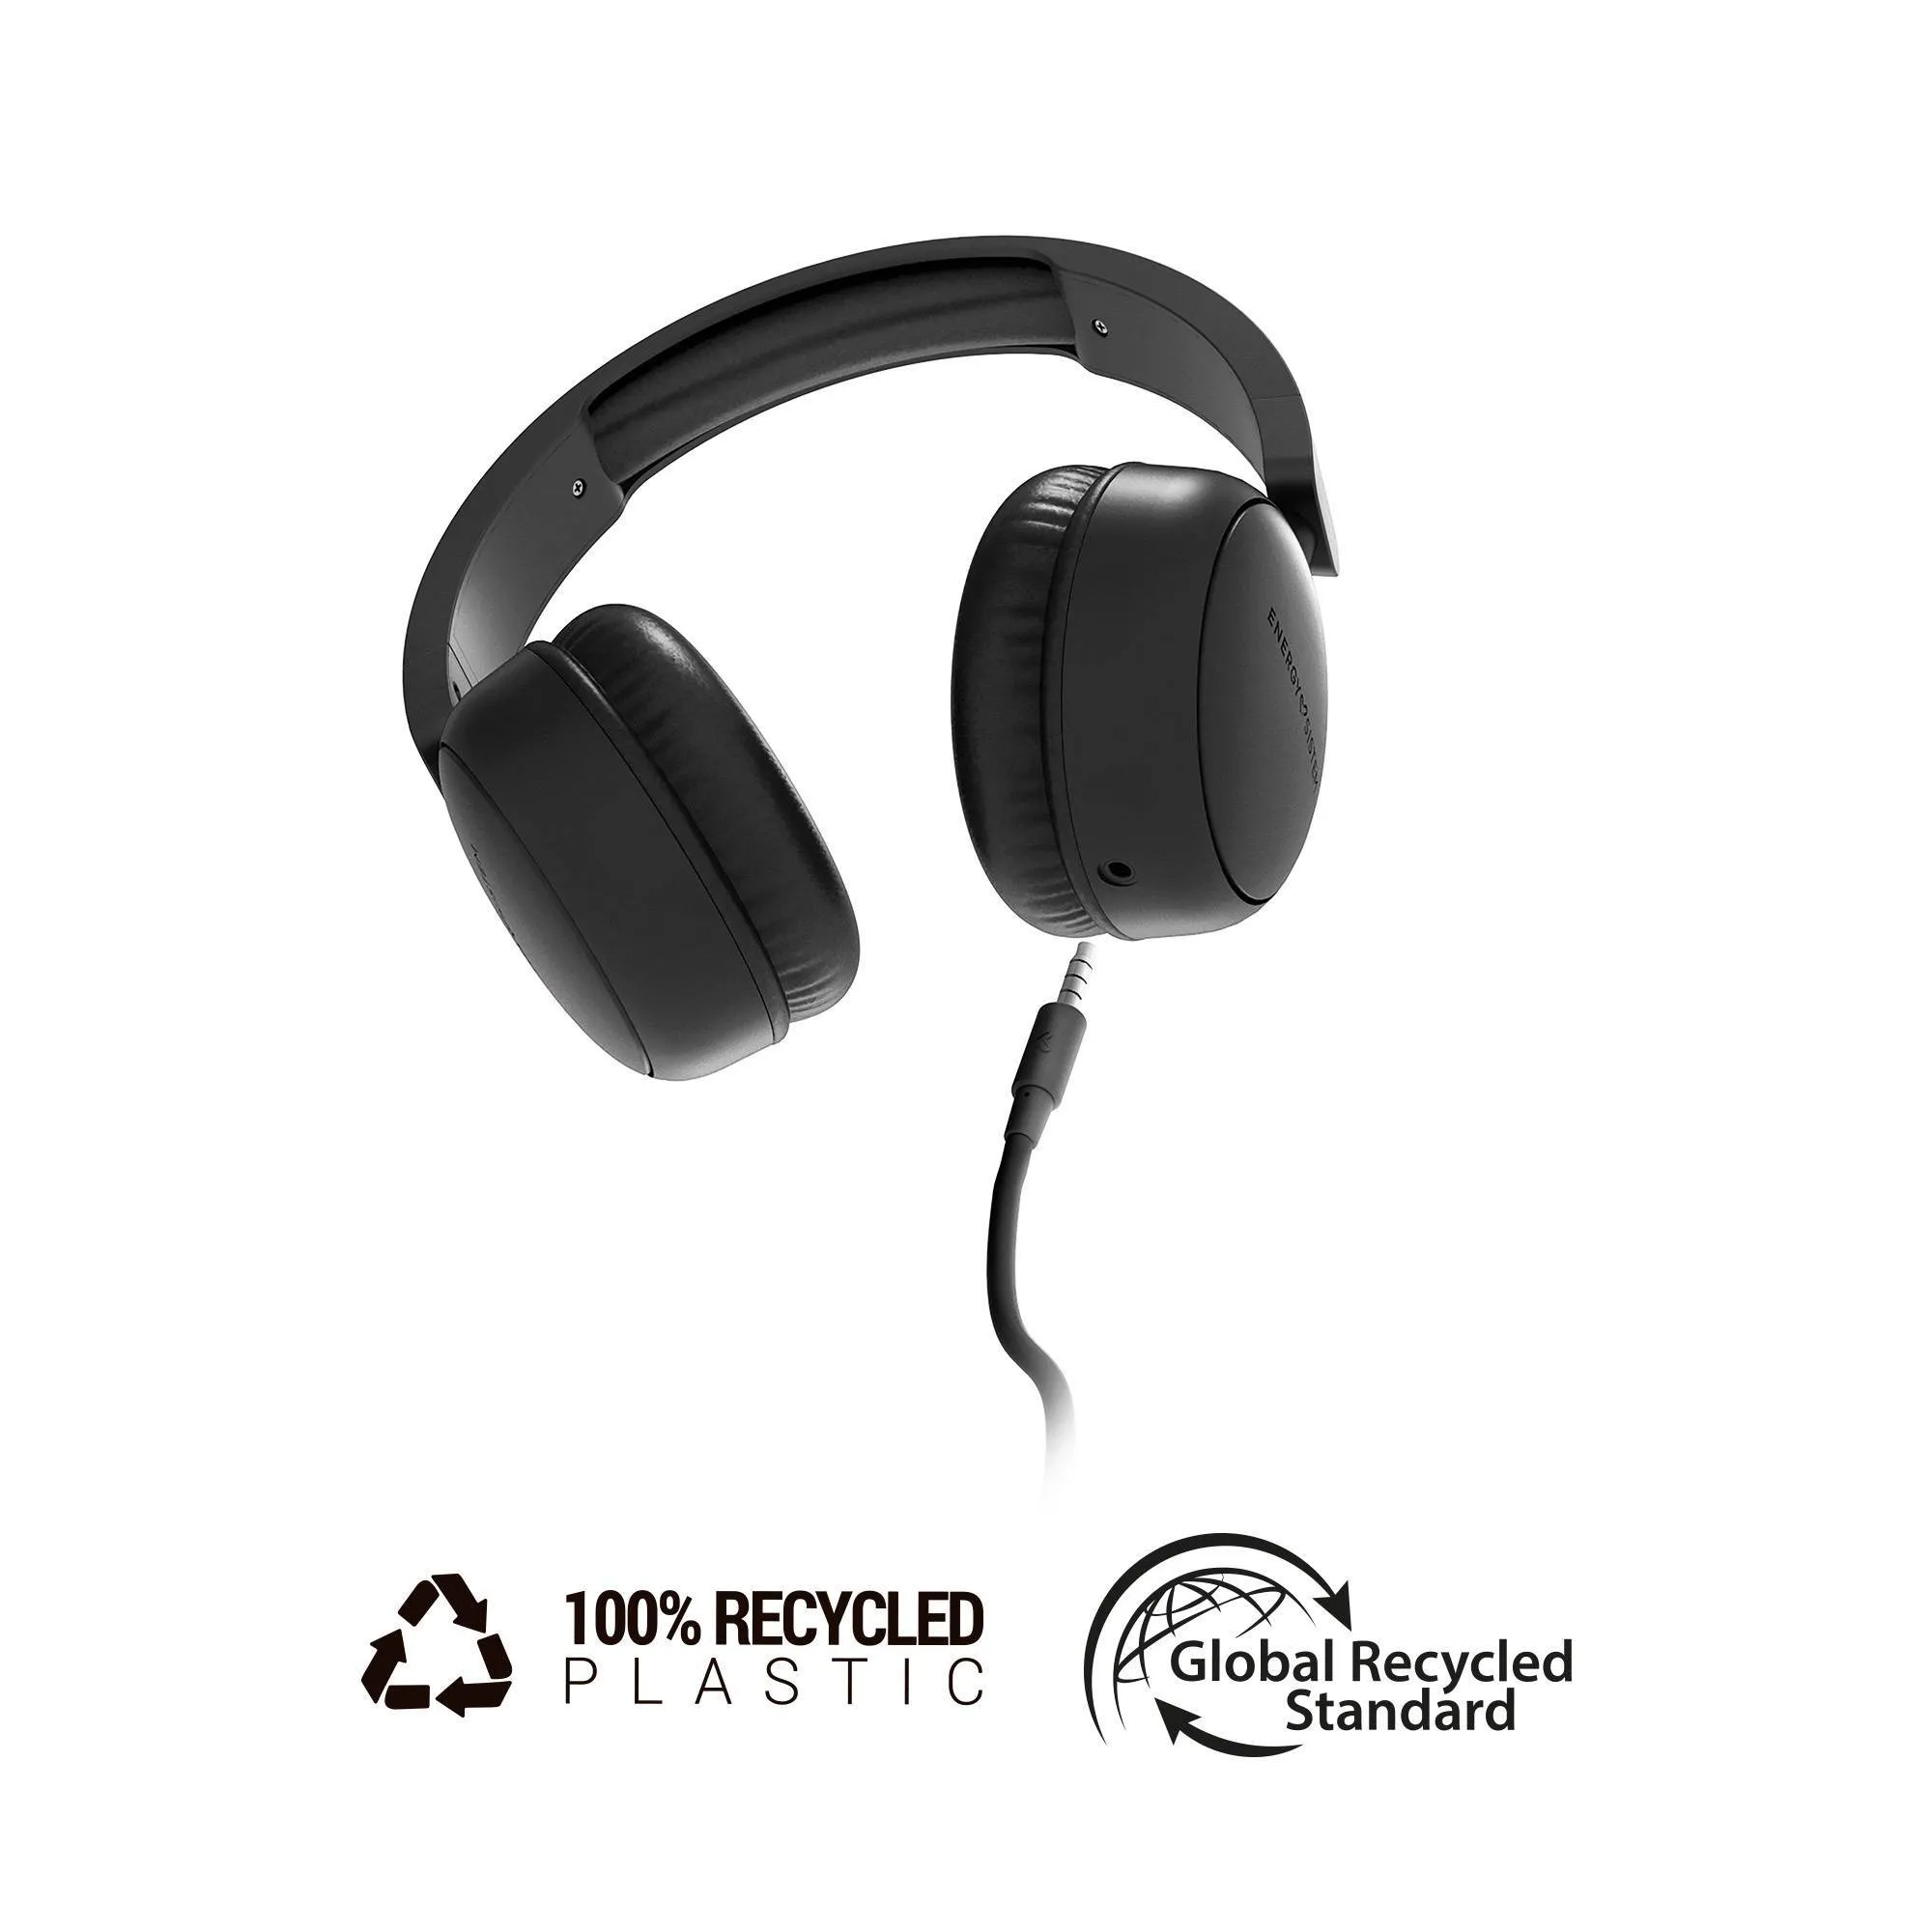 Auscultadores com fio Soundspire fabricados com plástico 100% reciclado